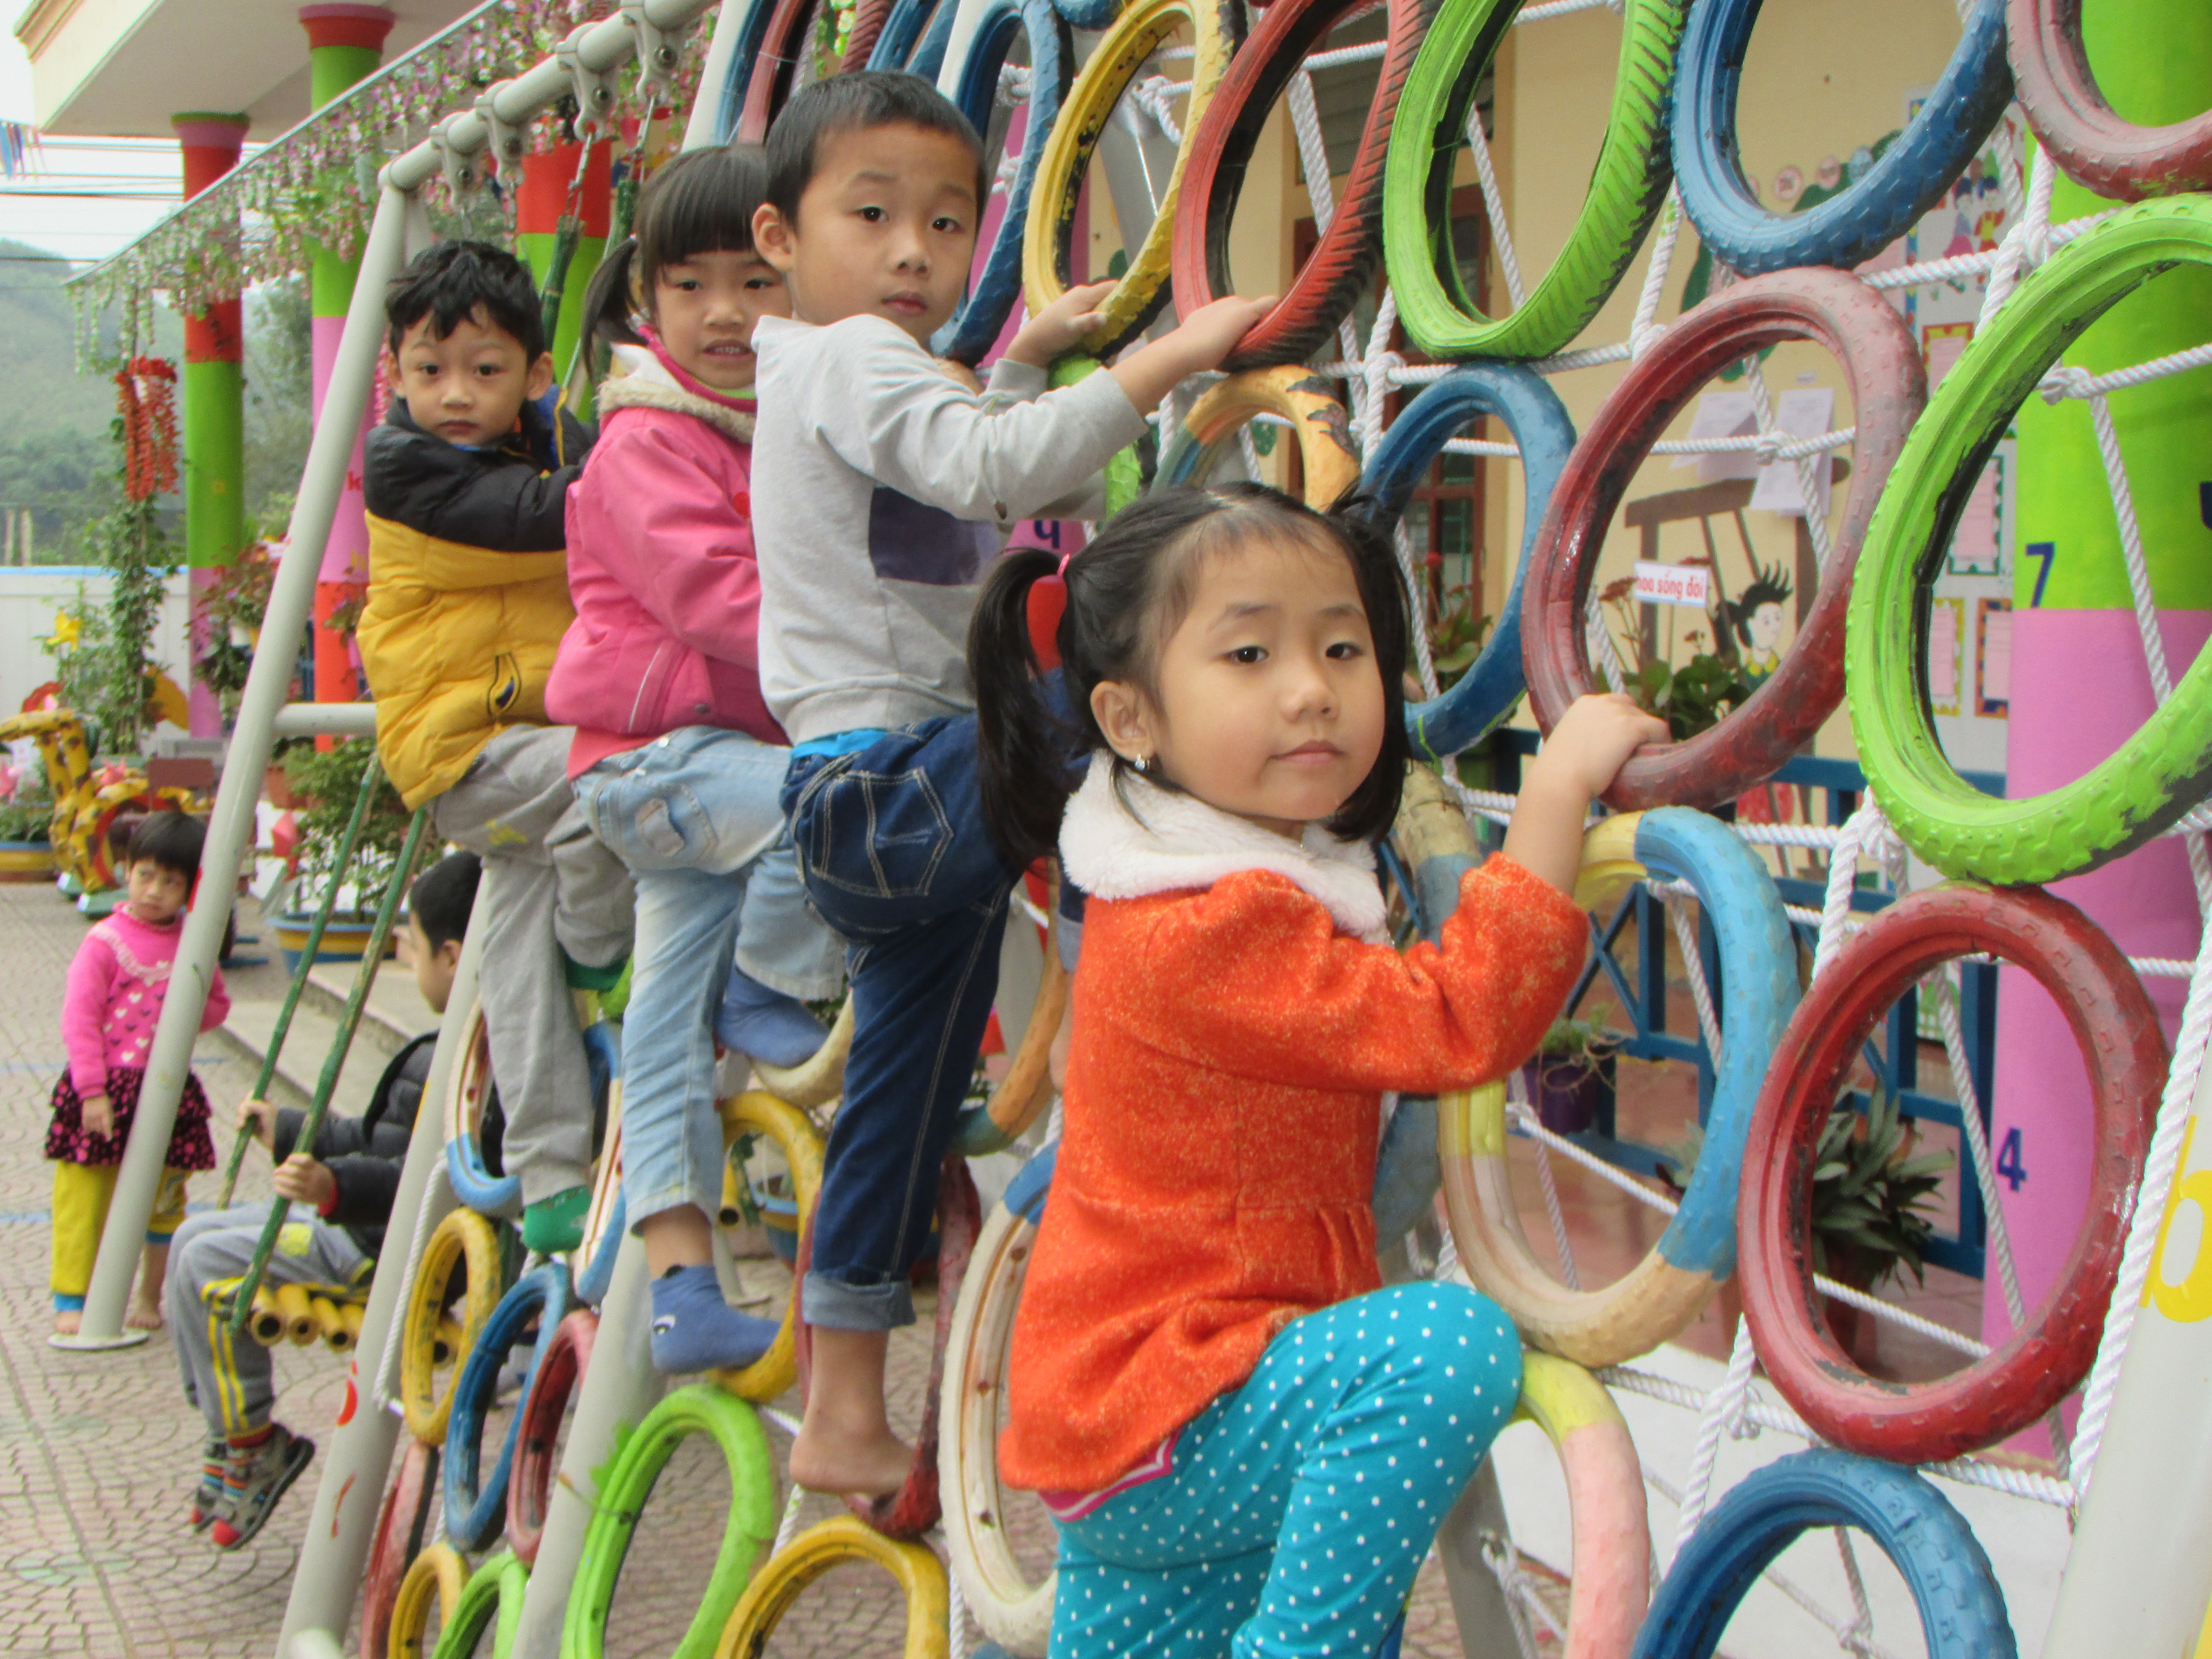 Mặc  dù được làm từ phế thải nhưng đồ chơi của các cháu an toàn, thân thiện với môi trường, qua đó góp phần giáo dục kỹ năng cho trẻ. Ảnh Minh Hạnh